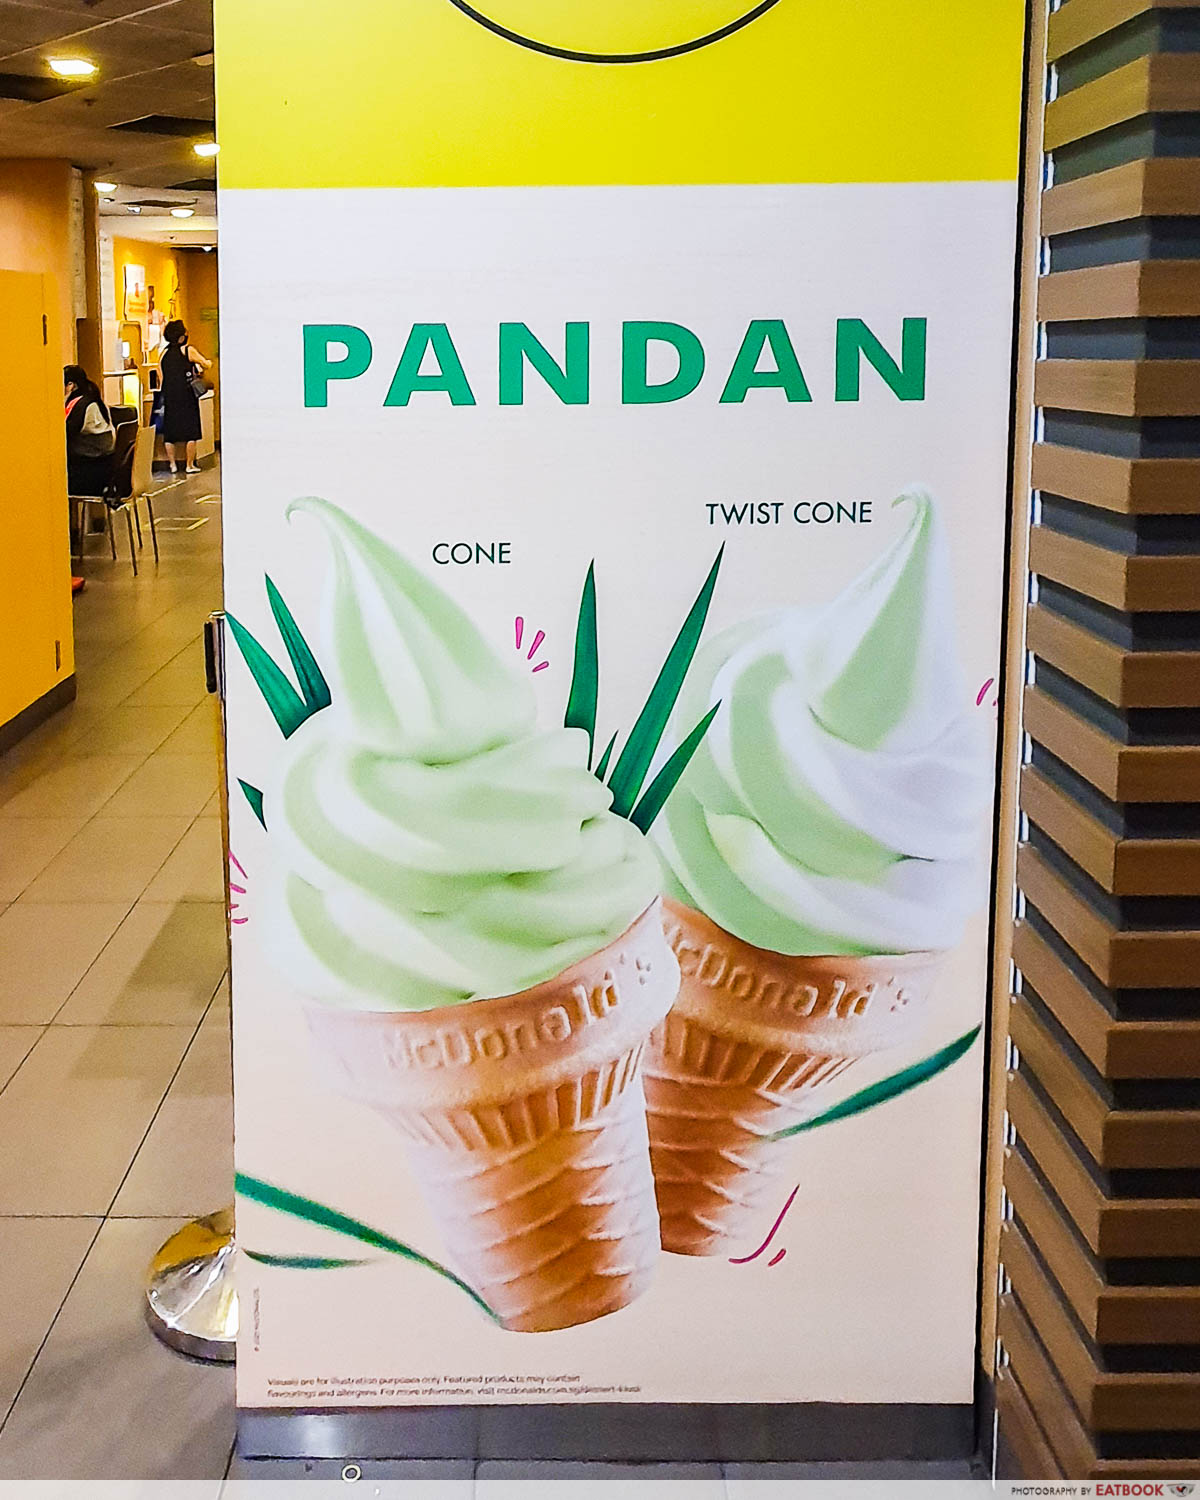 mcdonalds pandan ice cream - dessert kiosk